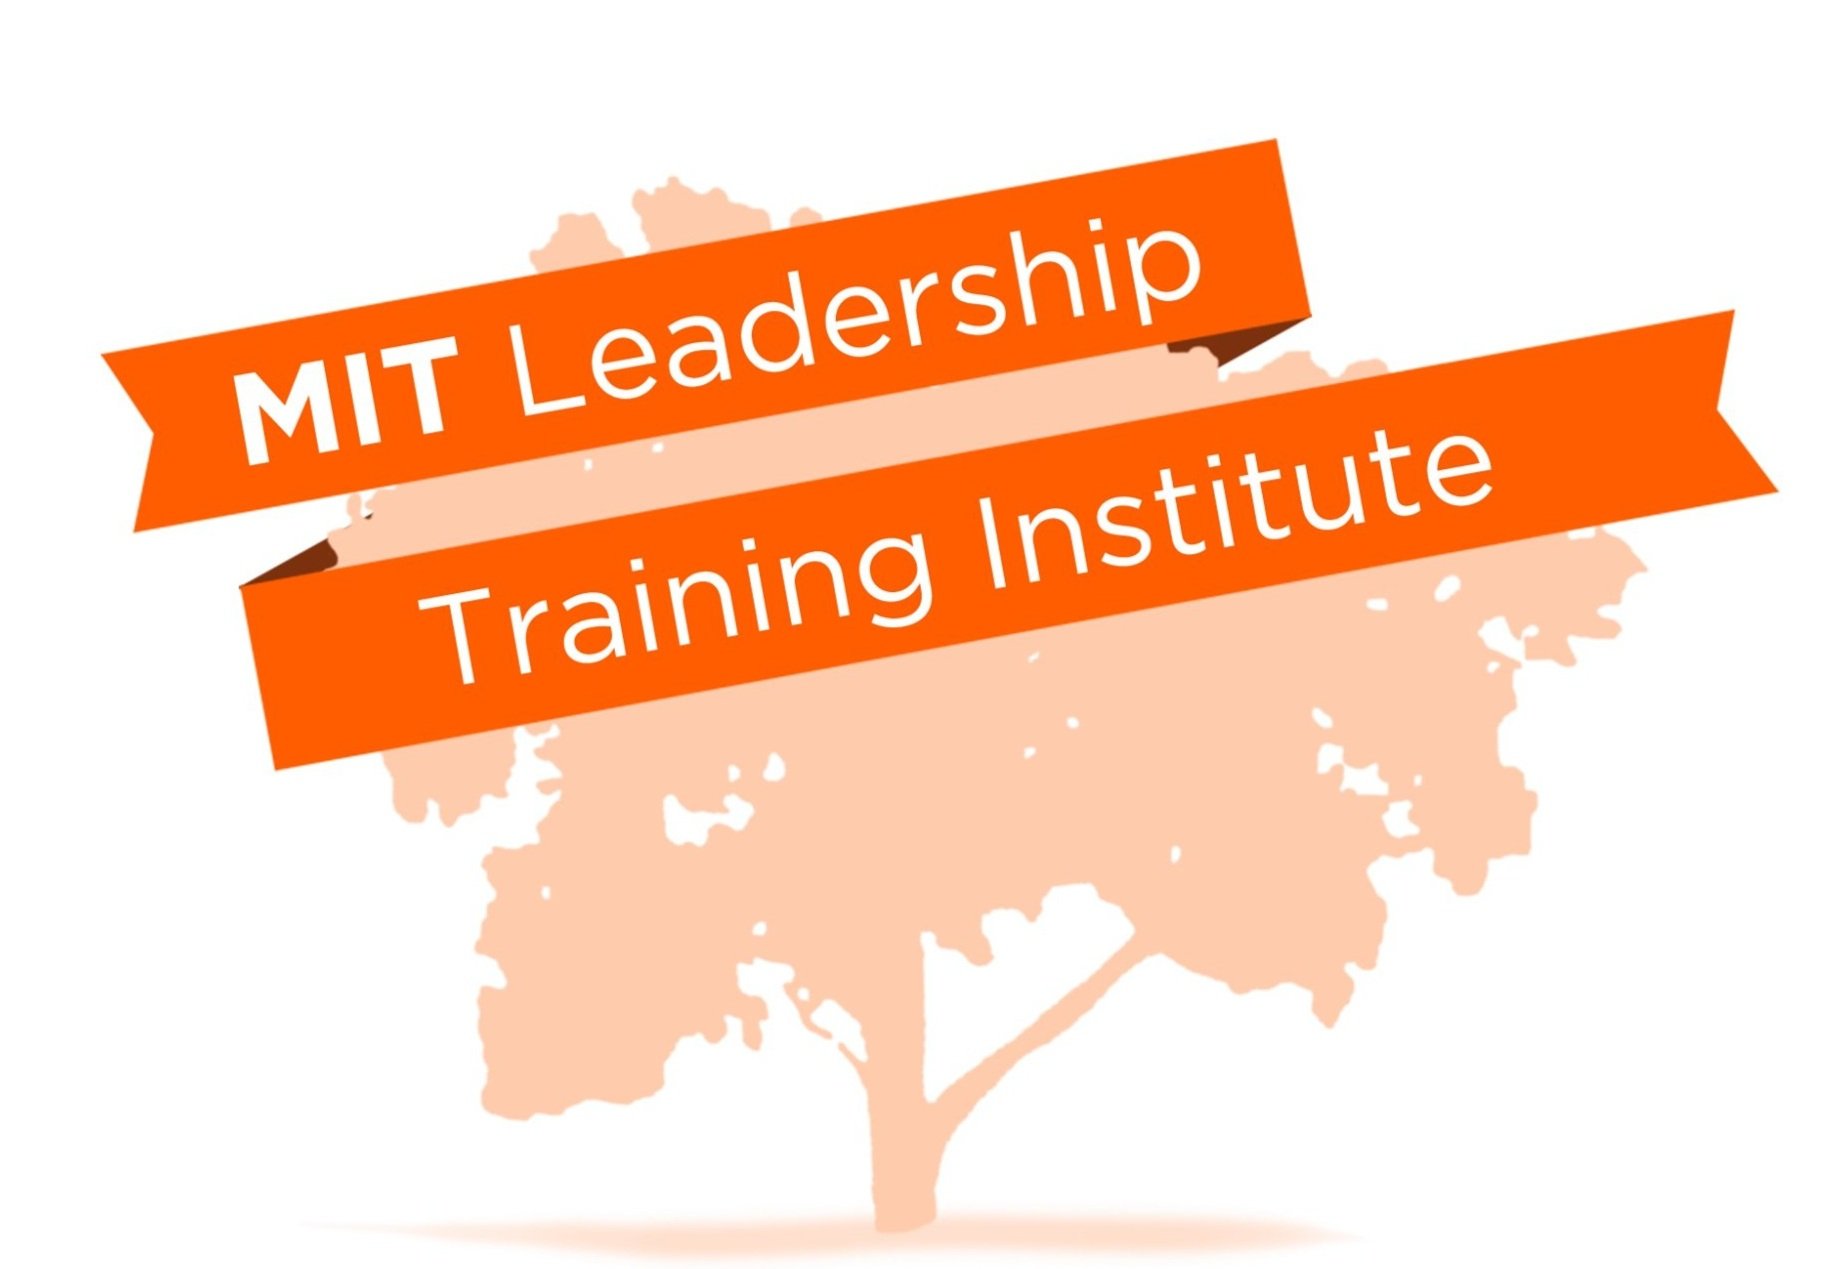 MIT Leadership Training Institute